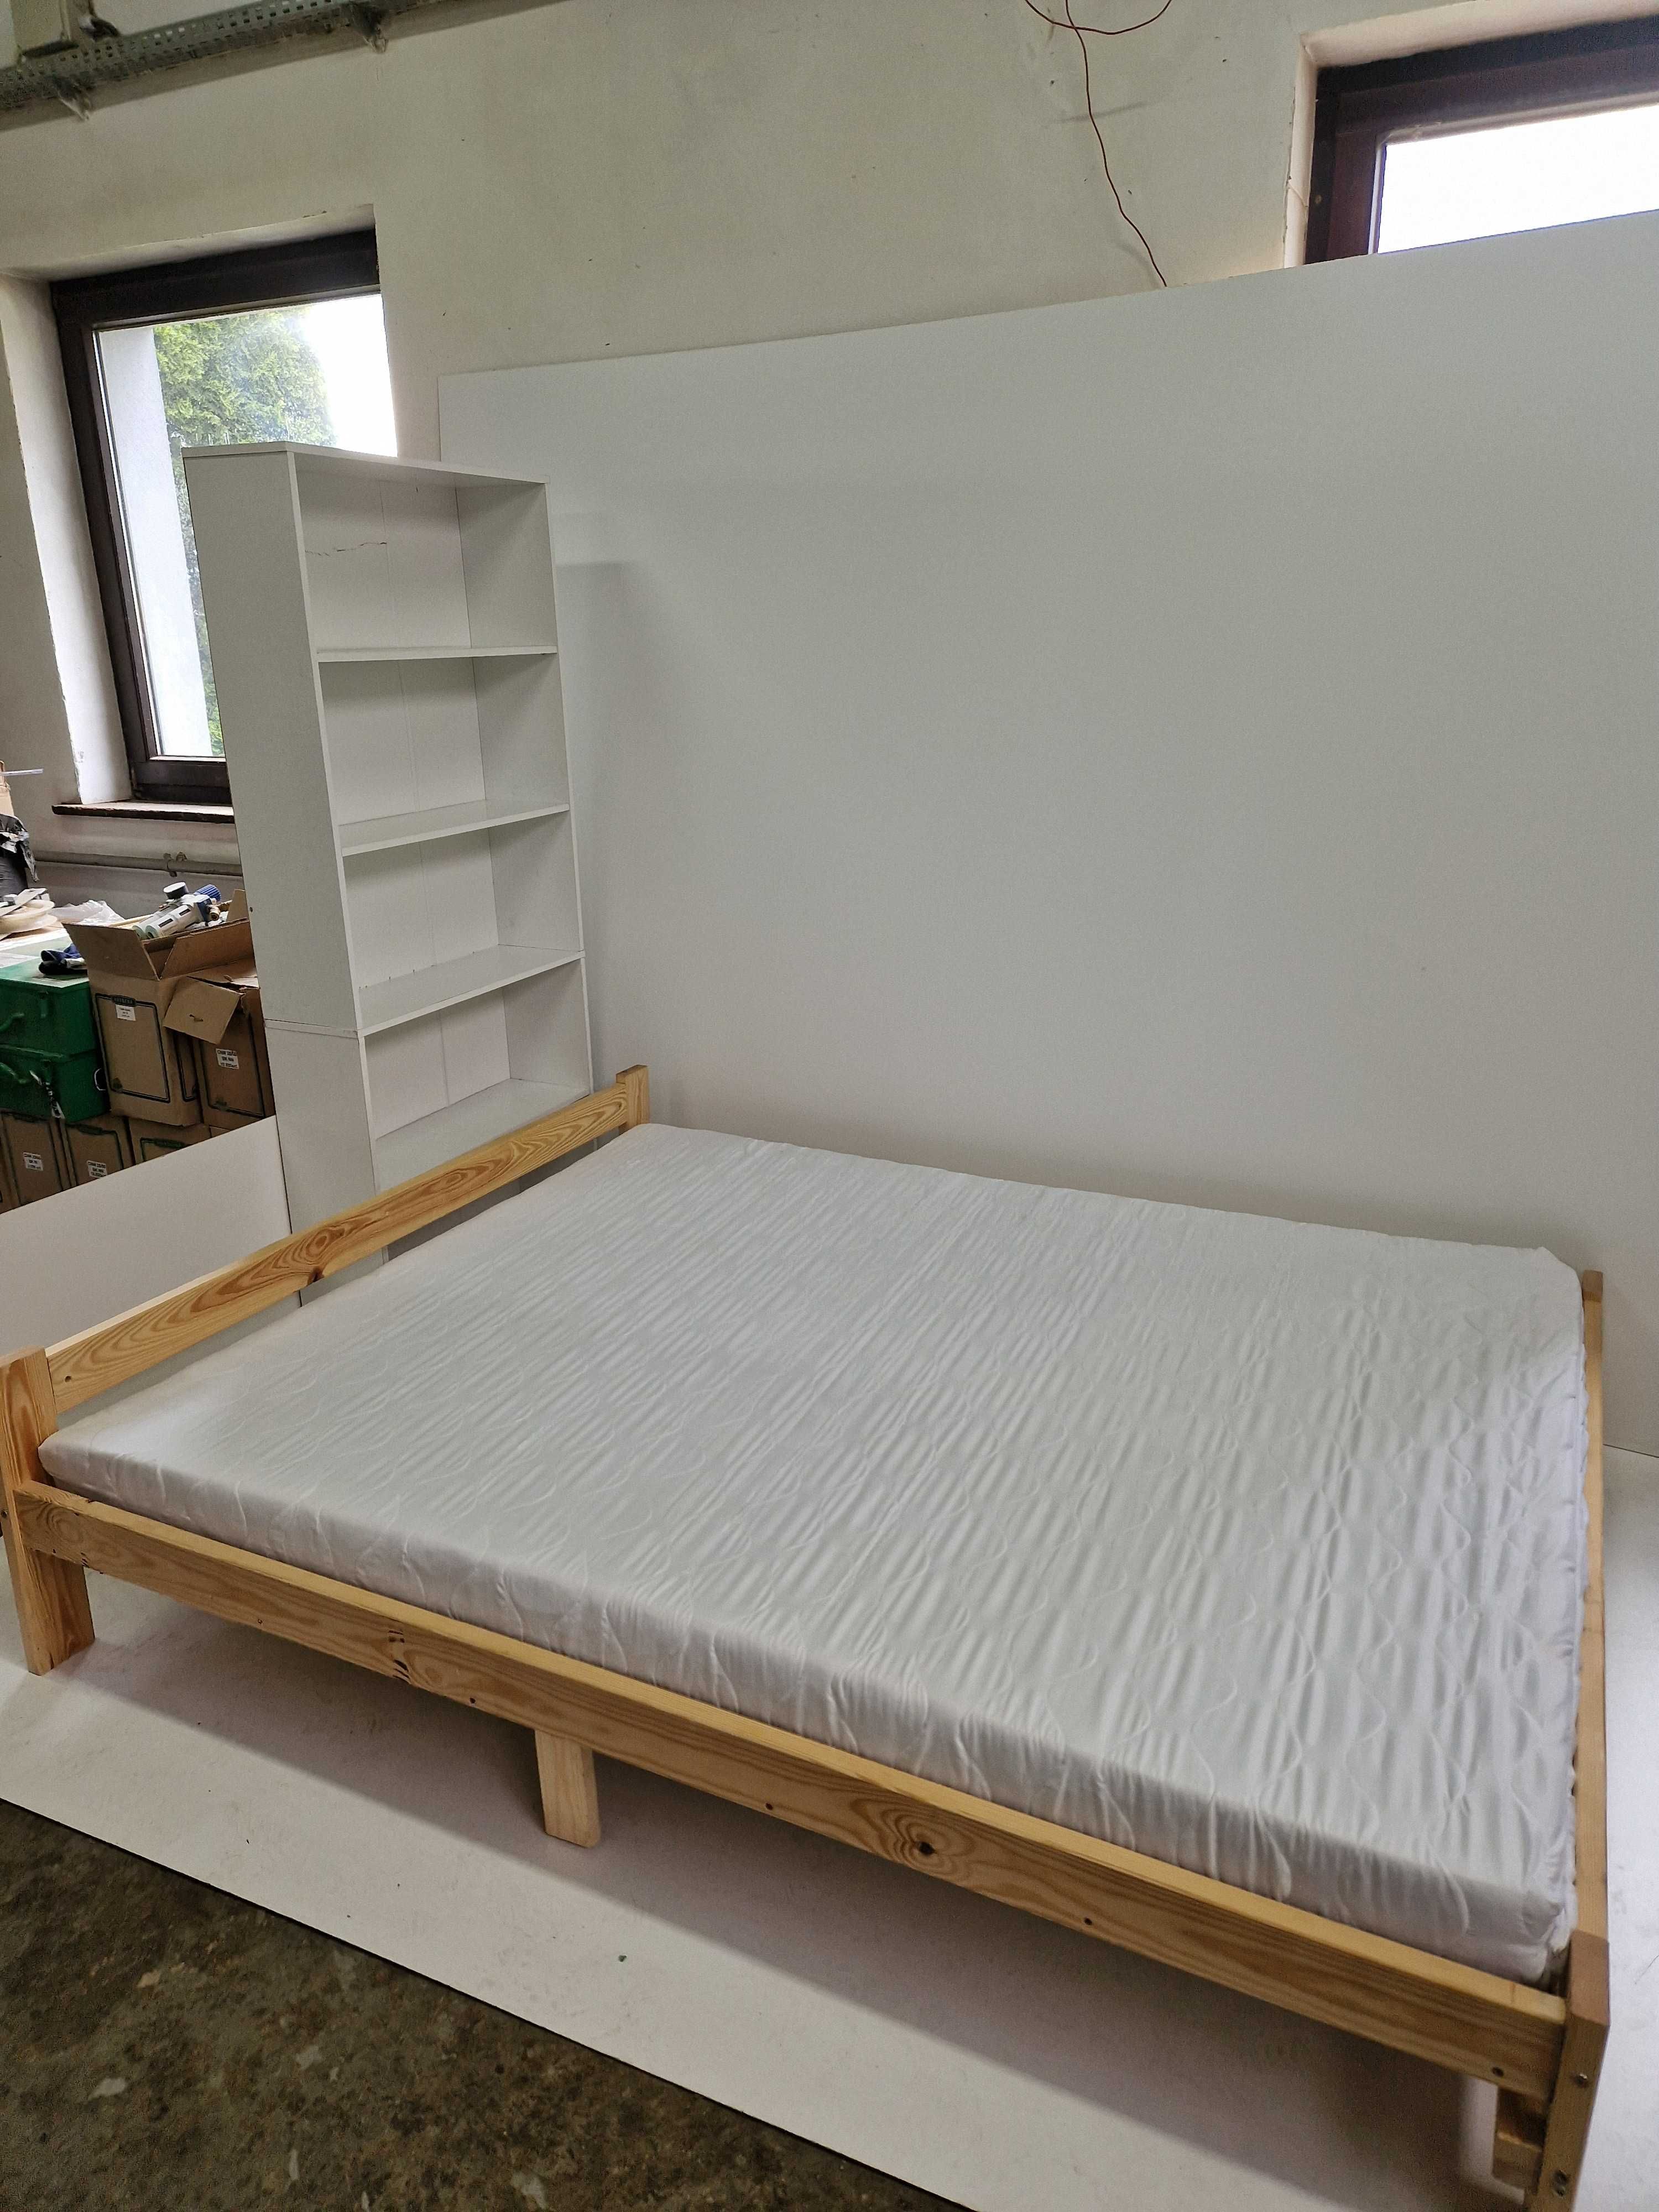 Łóżko drewniane 160x 200 90x200 pracownicze hotelowe